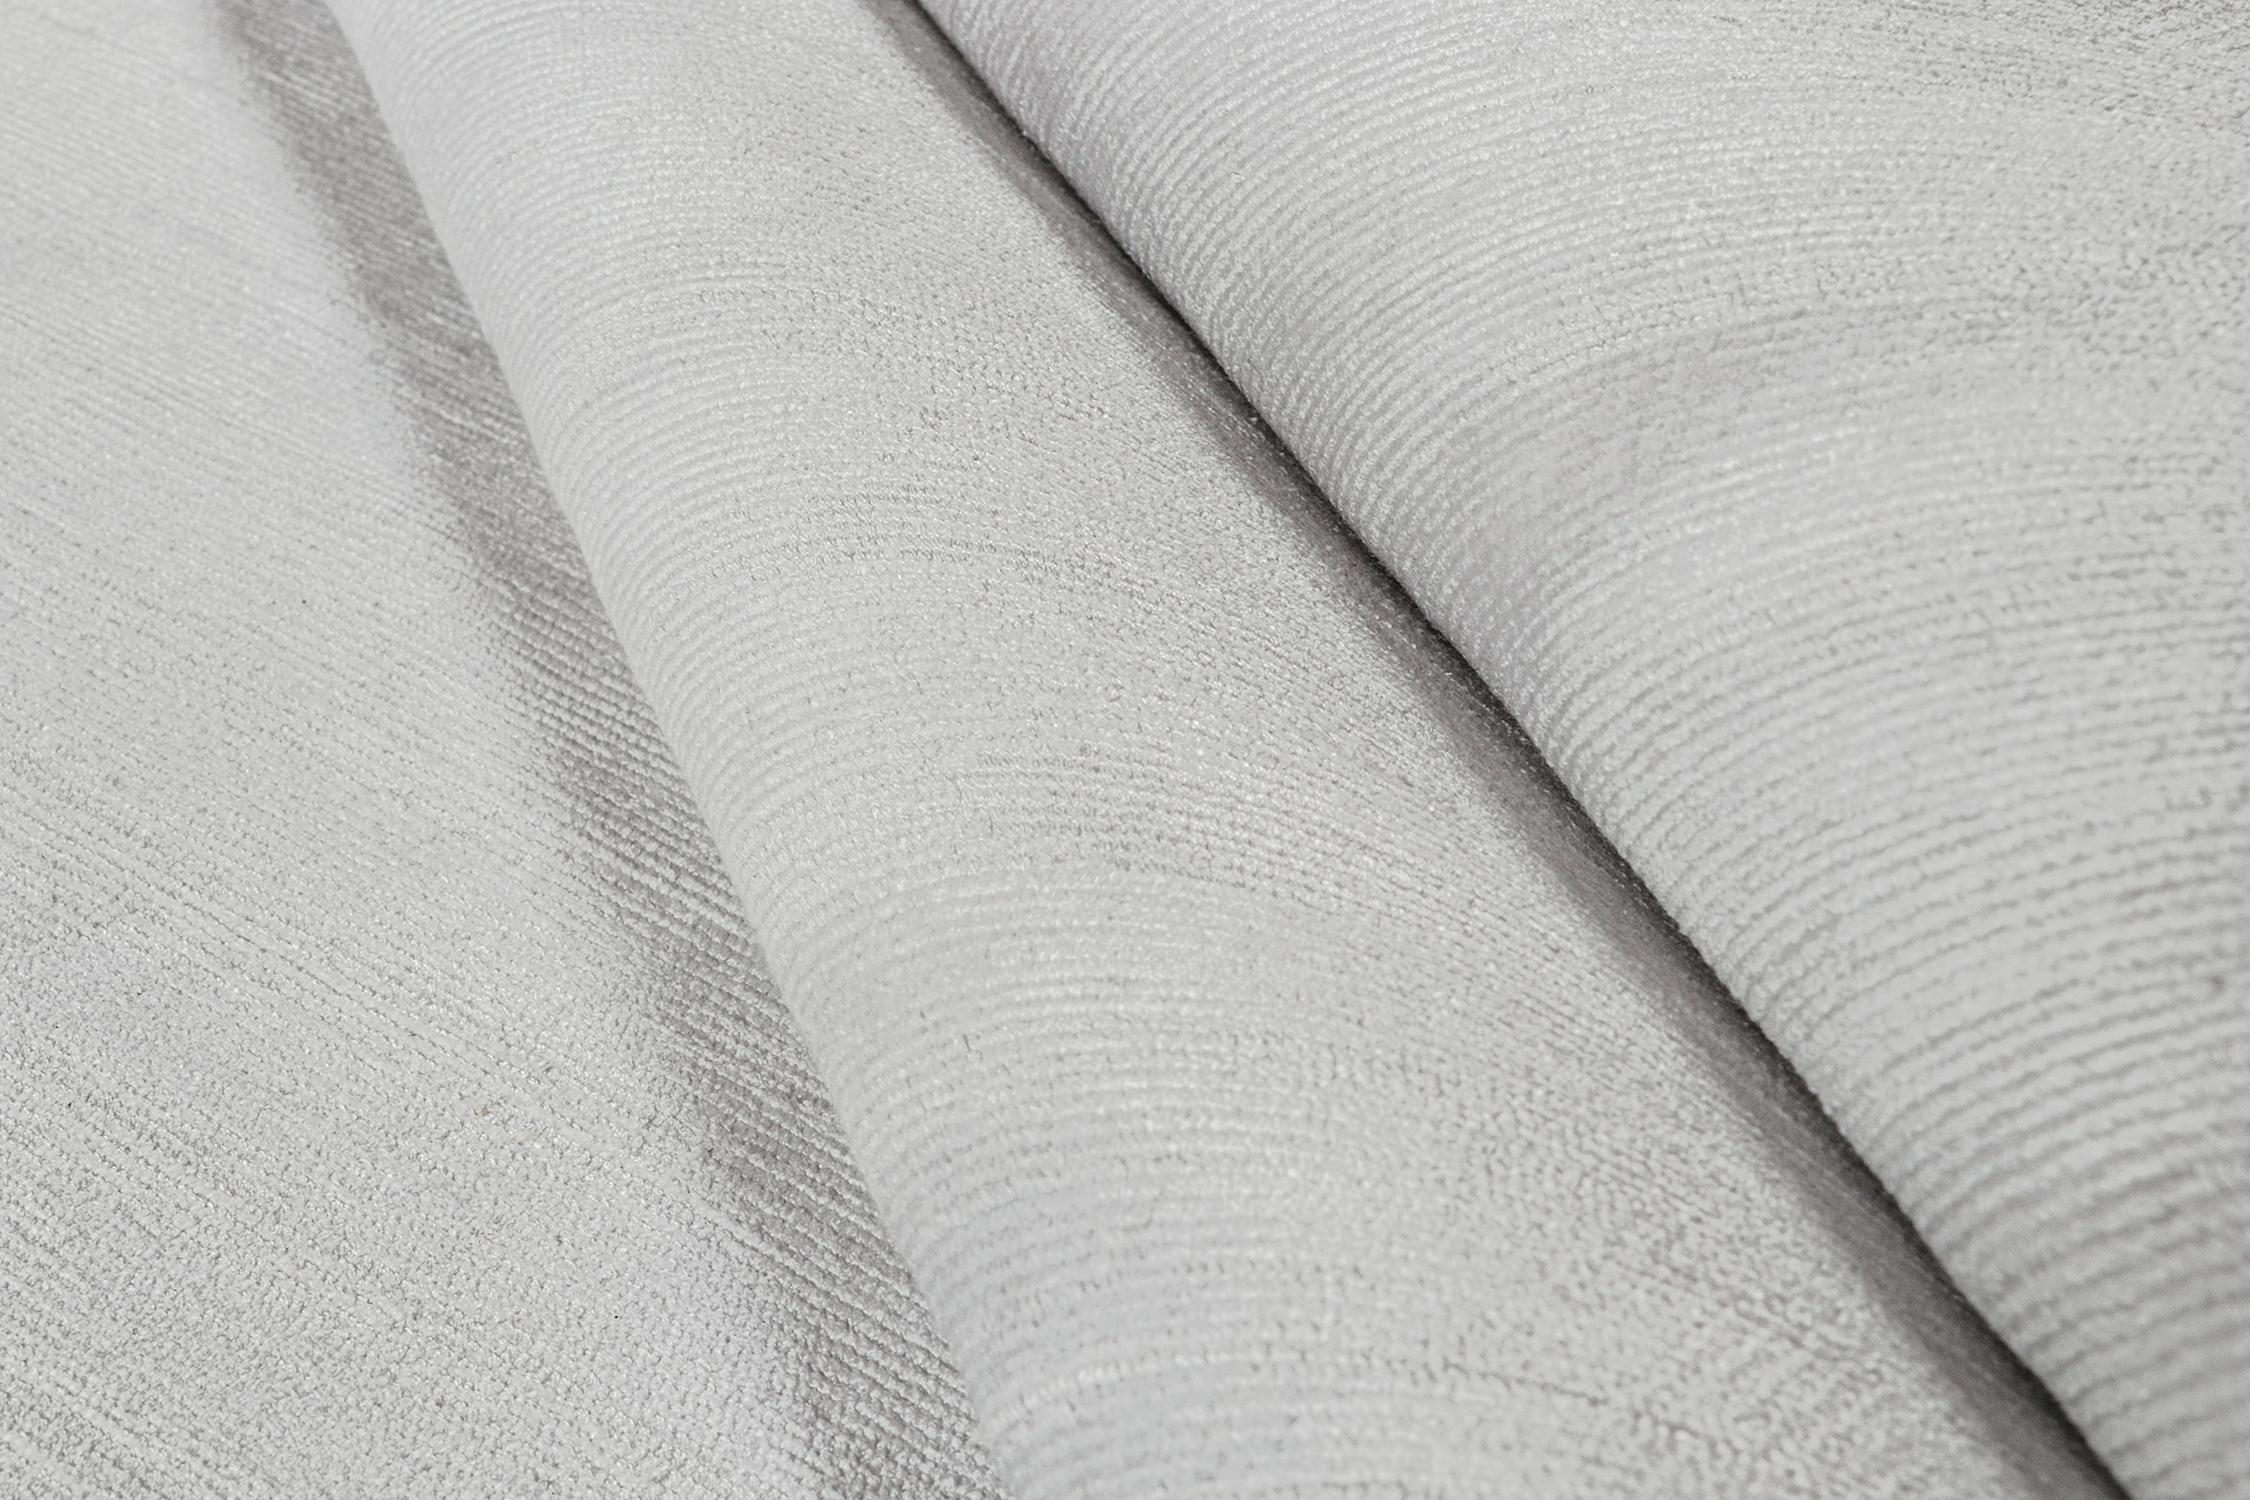 Noué à la main Rug & Kilim's Modern Rug in Solid Grey and Off-White Striae (tapis moderne avec des rayures en gris uni et en blanc cassé) en vente